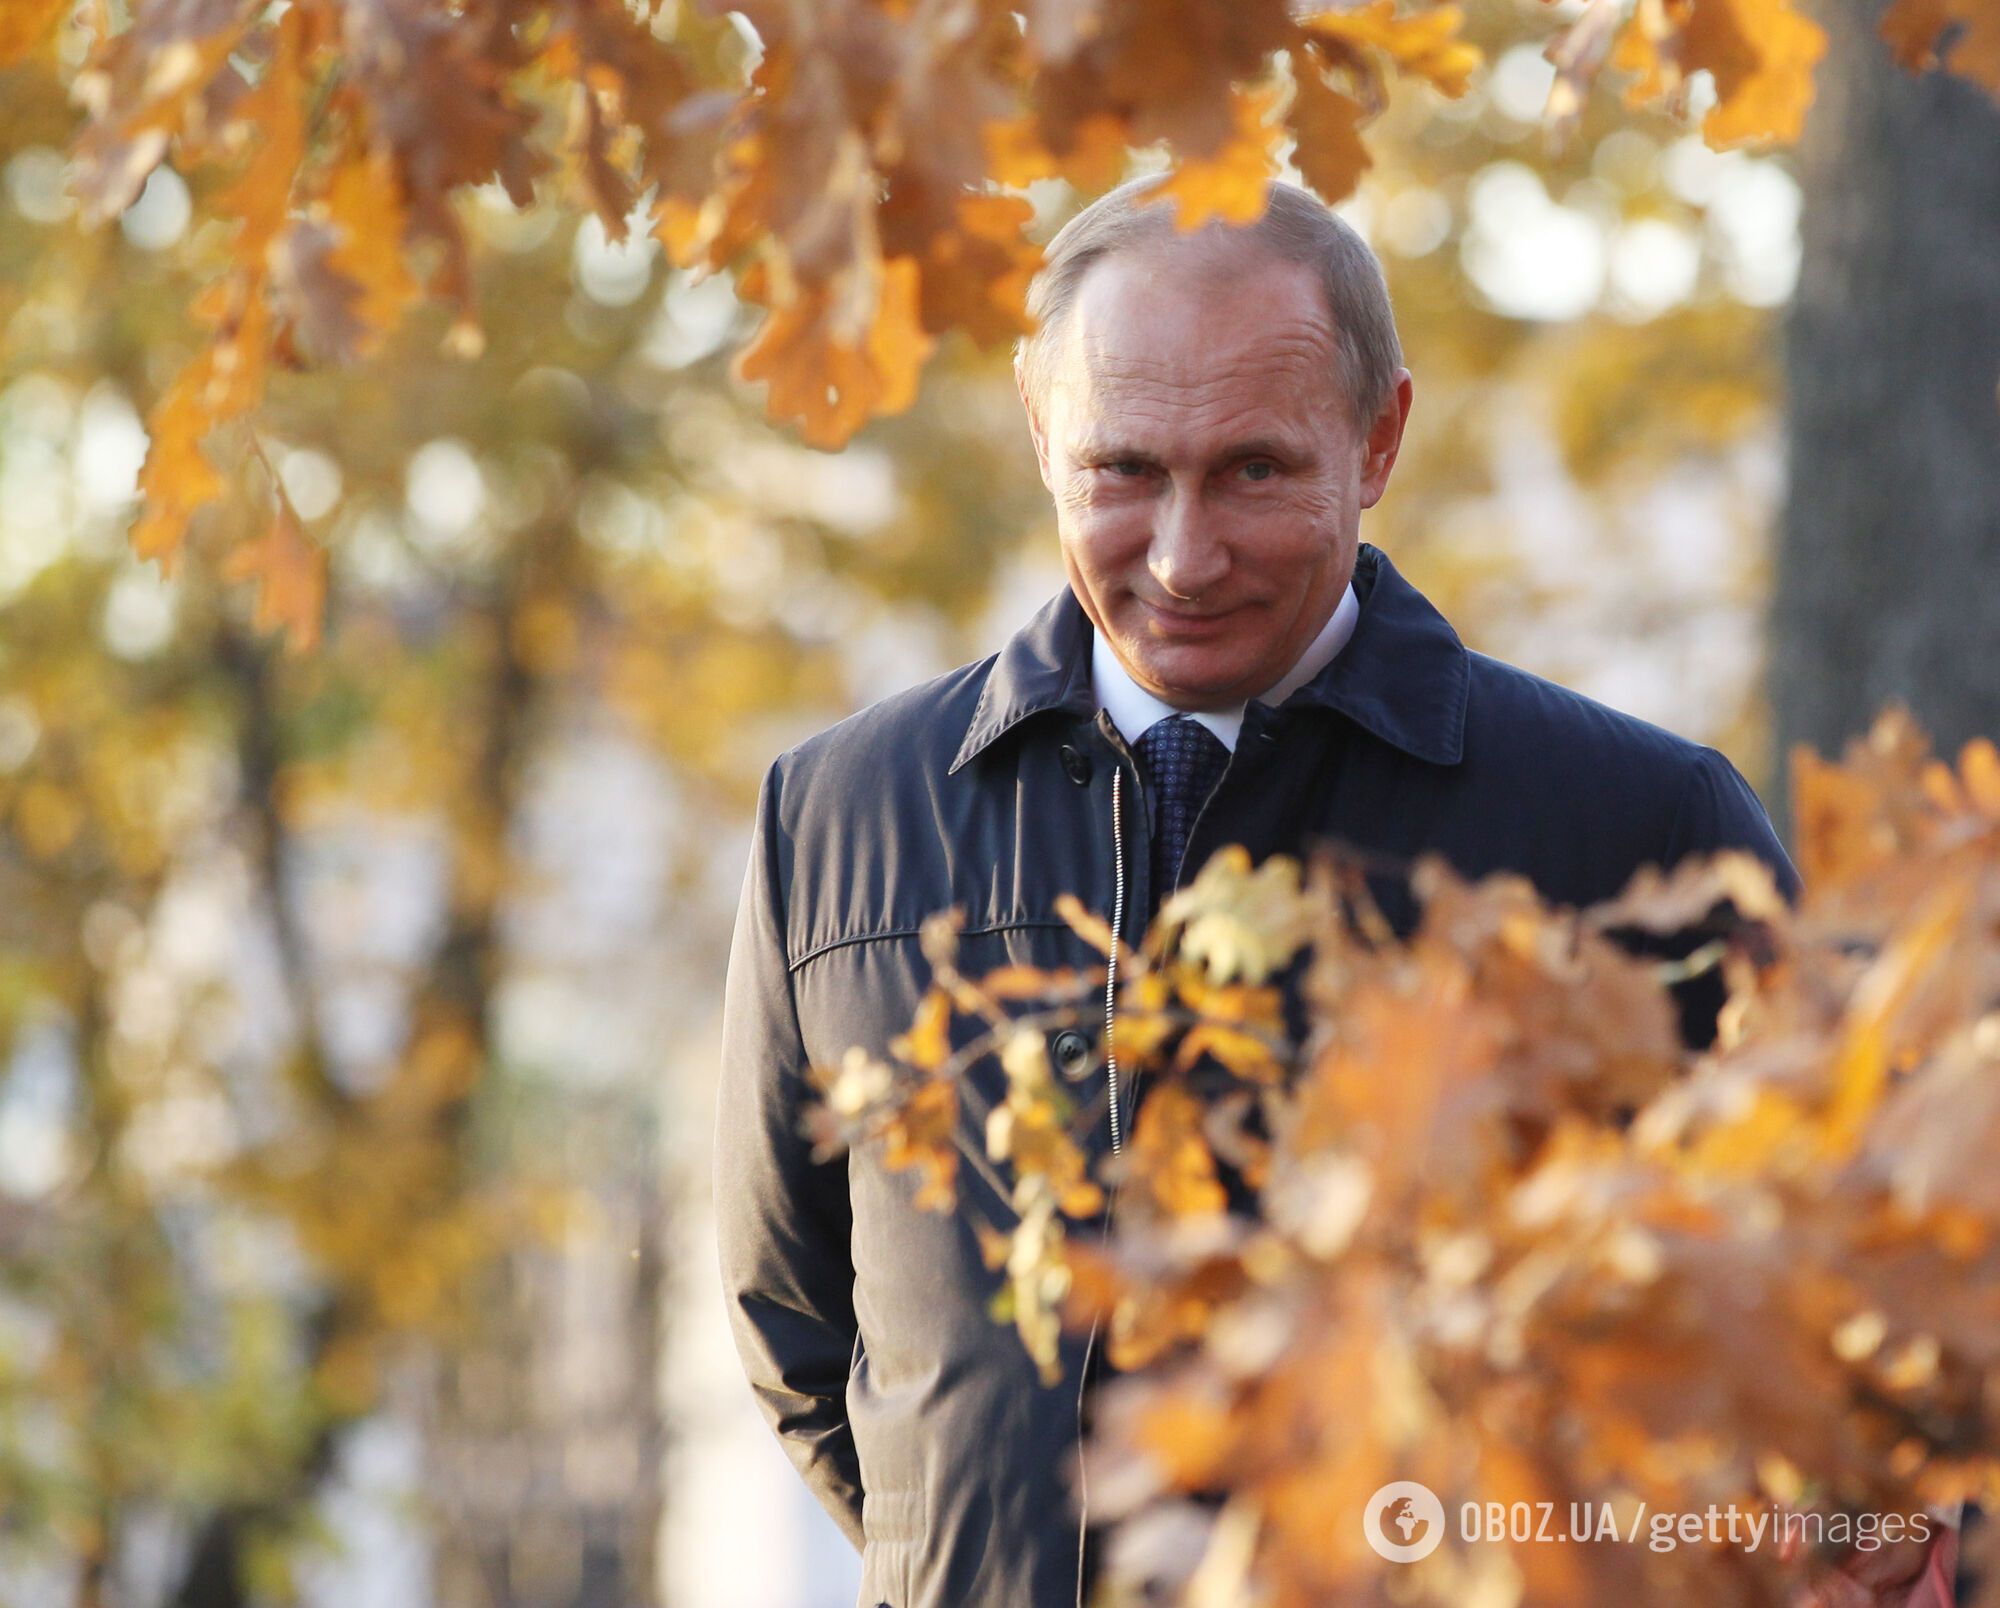 Він слабкий і невпевнений у собі: розвіяно головний міф про Путіна